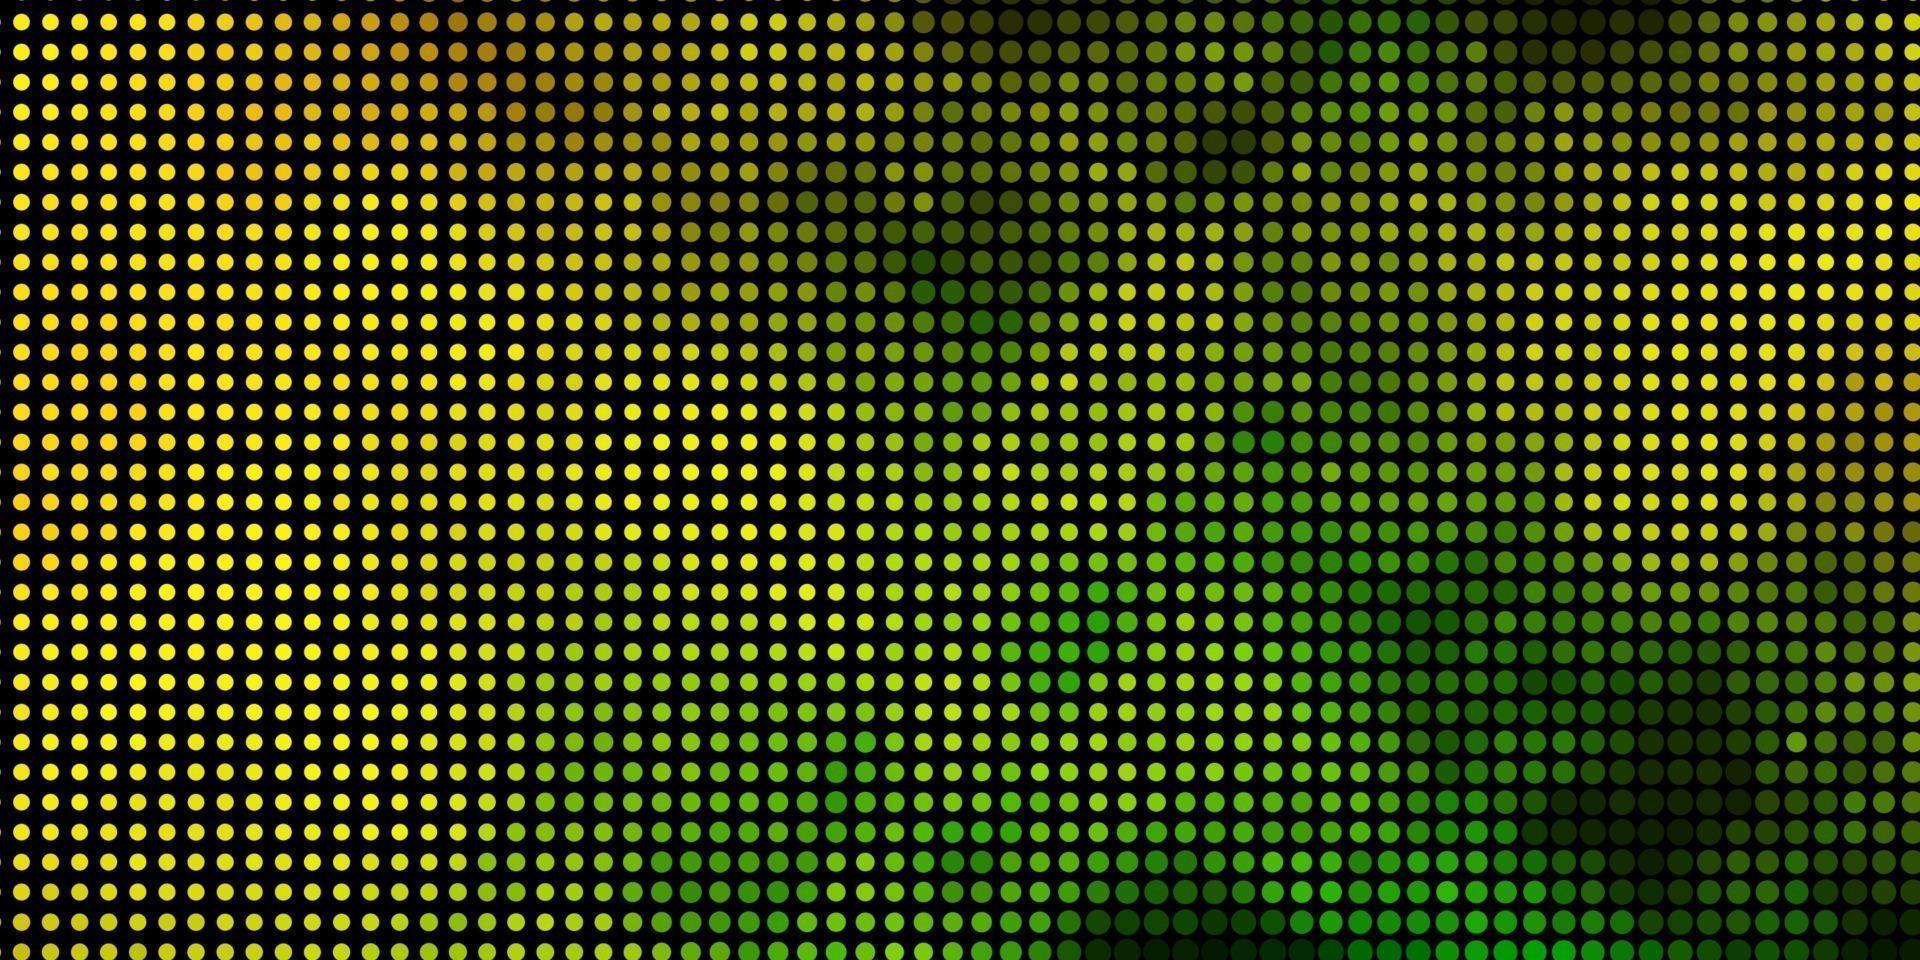 luz verde, amarelo padrão de vetor com esferas.